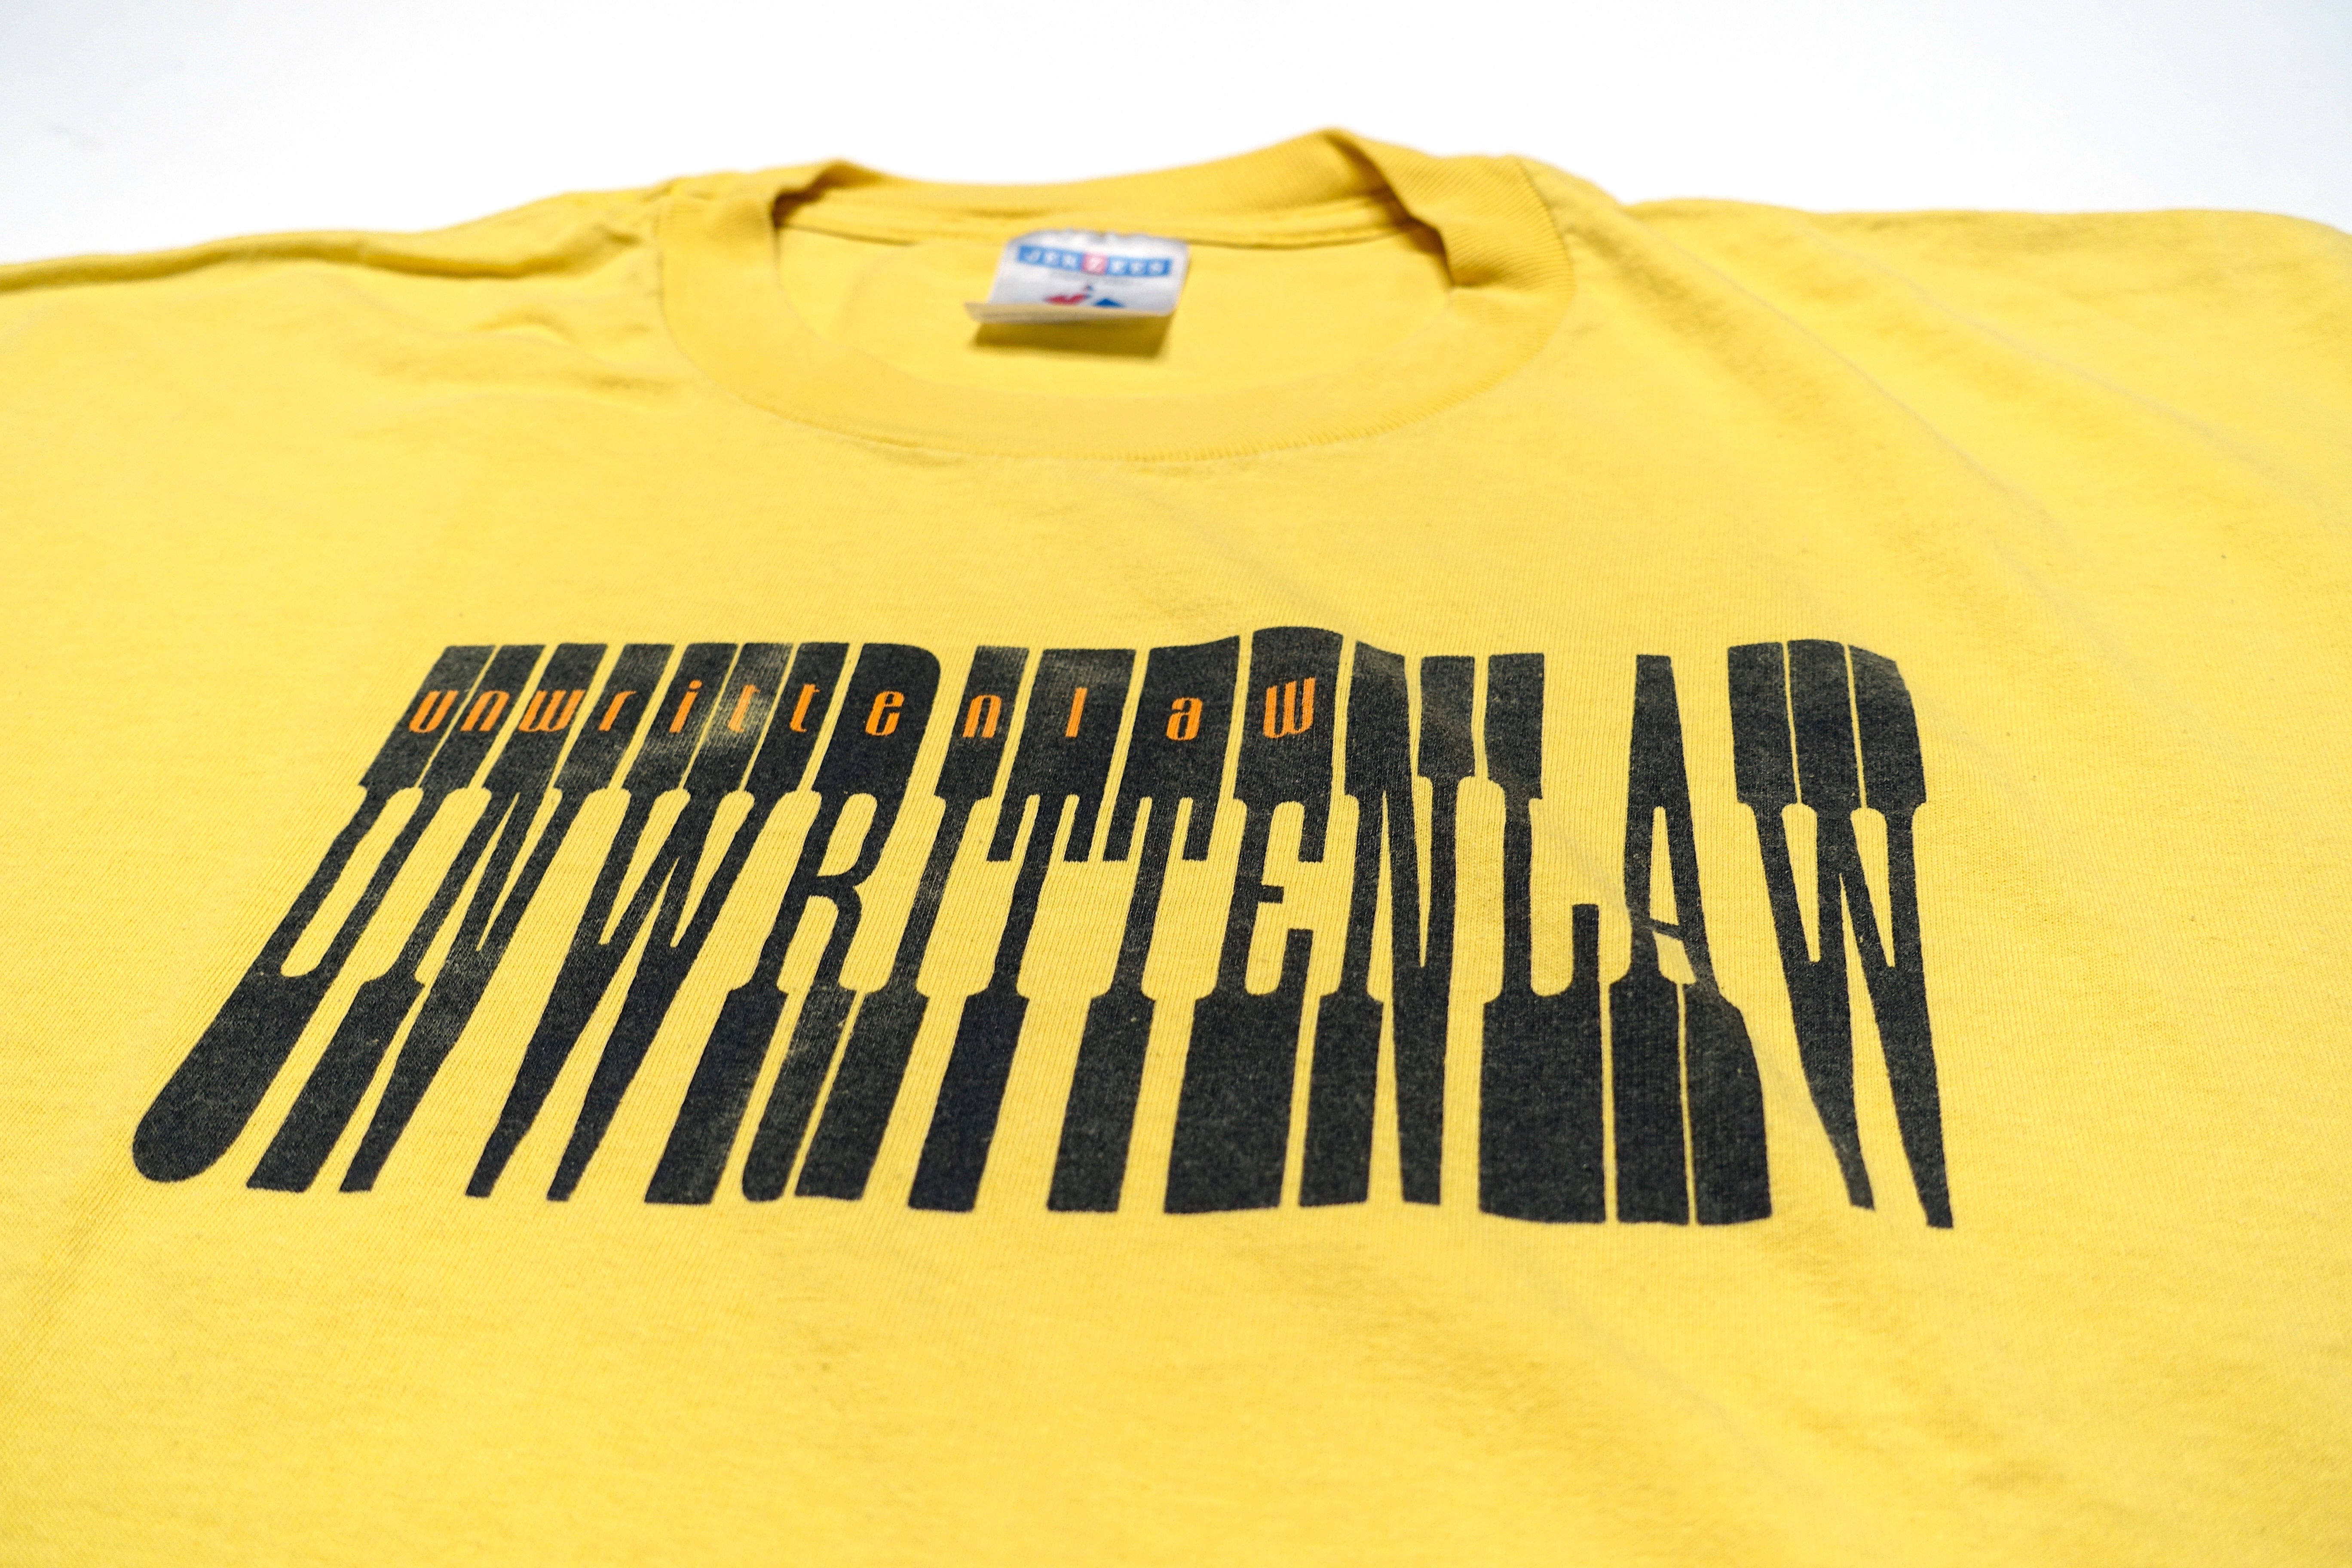 Unwritten Law – Double Vision S/T 1998 Tour Shirt Size XL